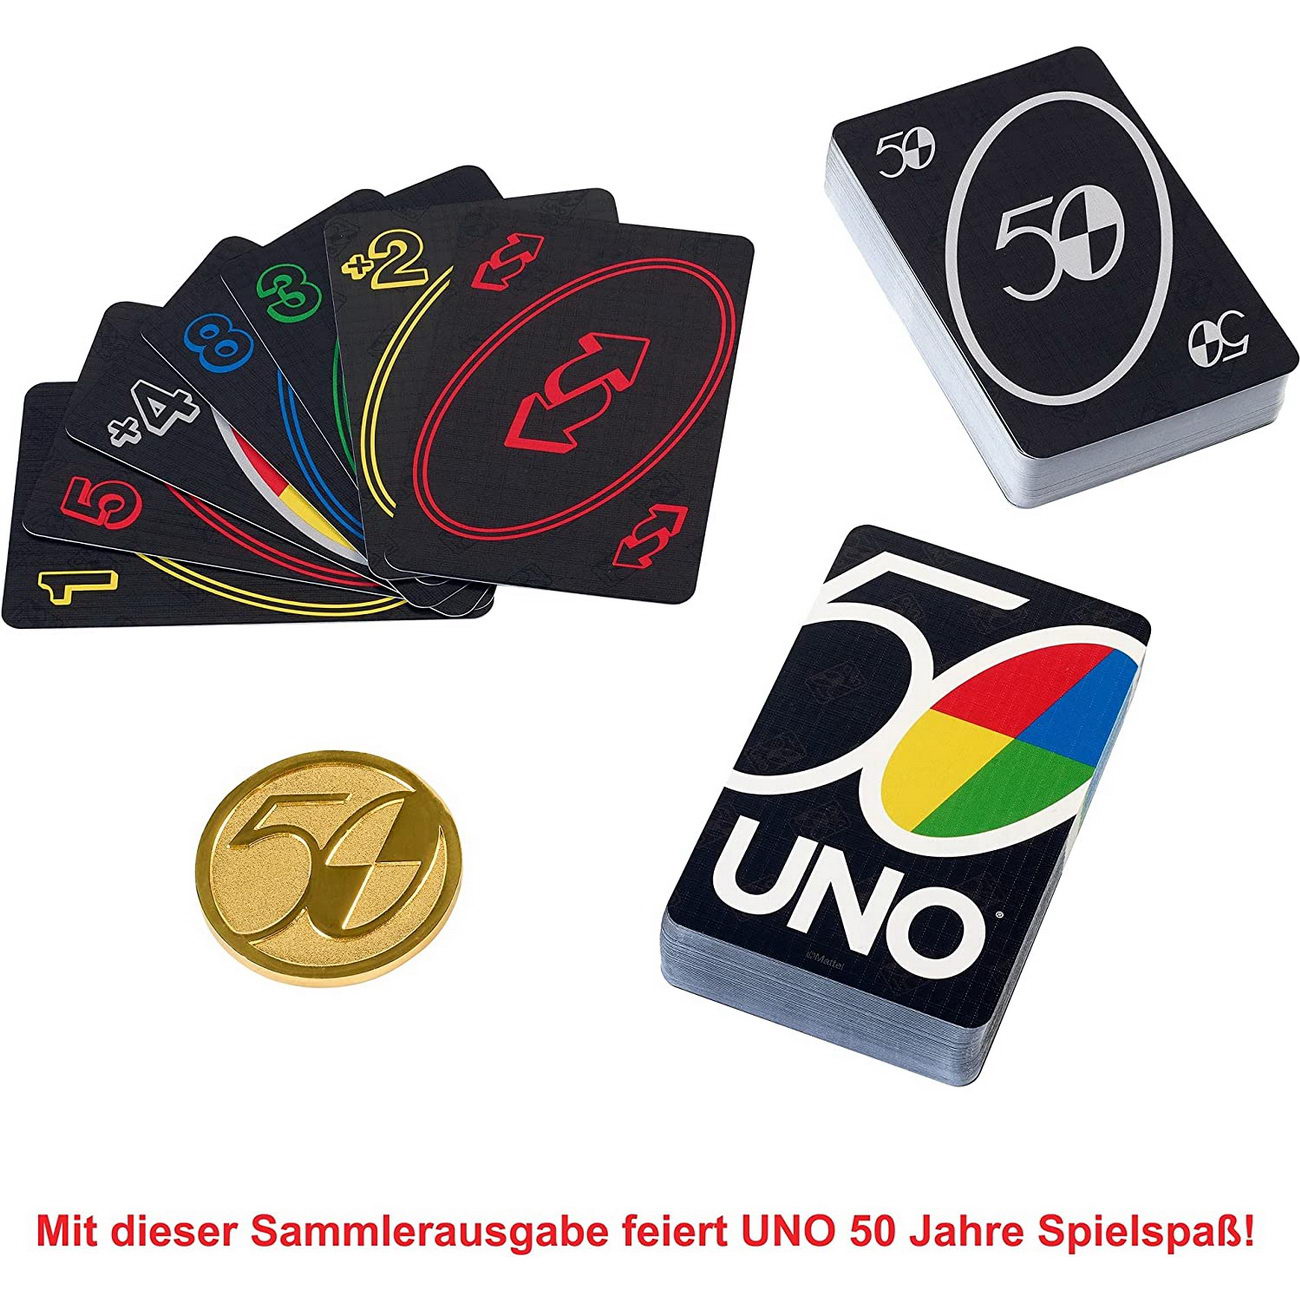 UNO Premium 50 Jahre Jubiläum Edition (Mattel GXJ94)